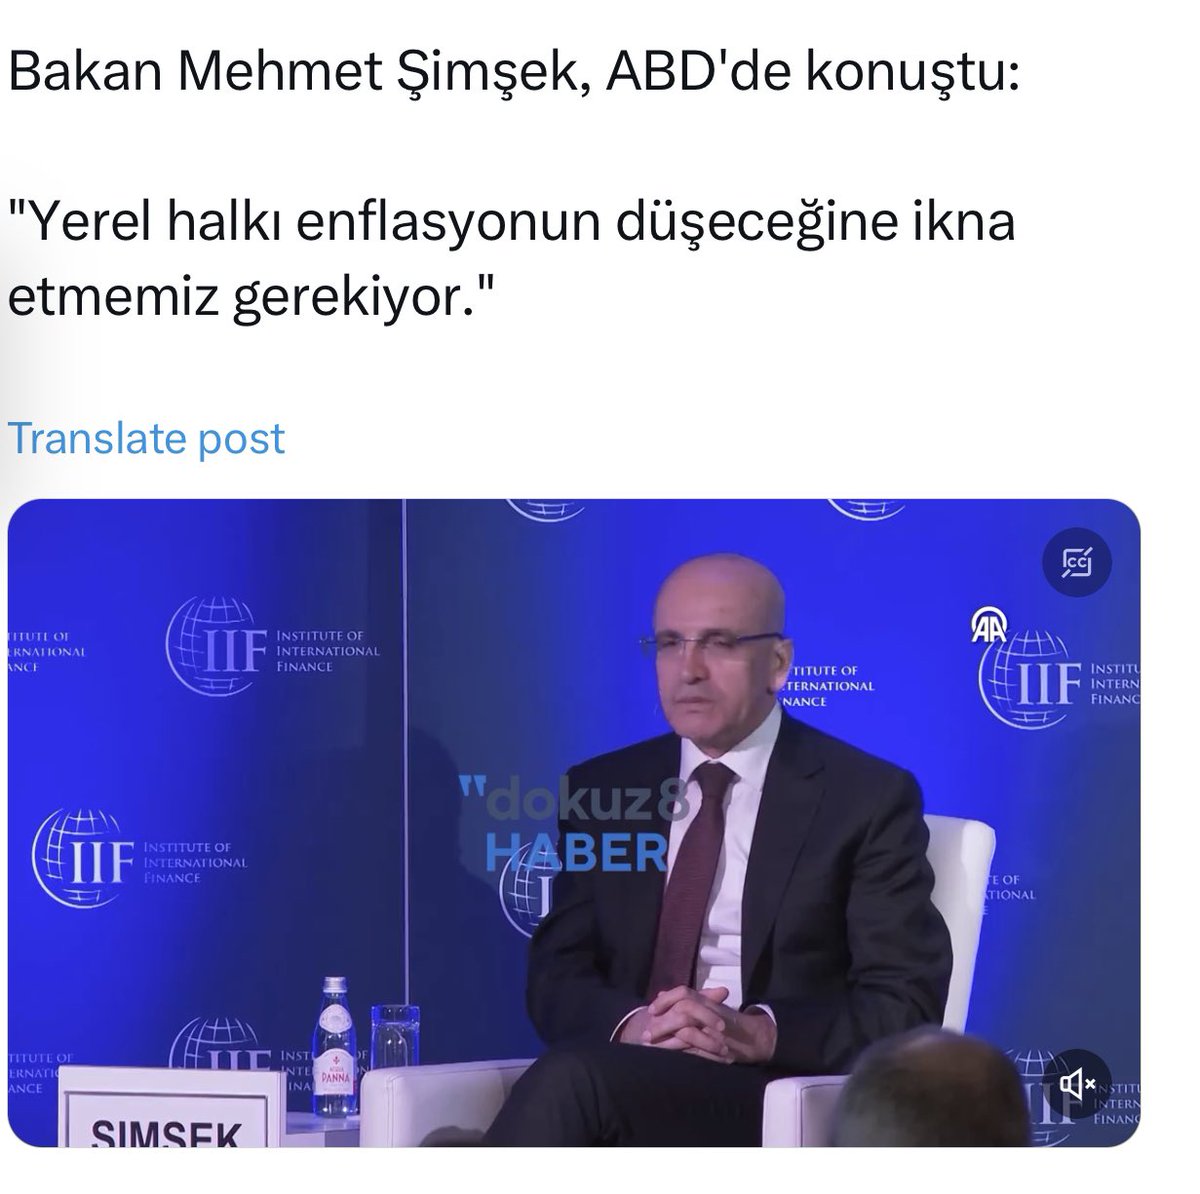 Sömürge valisi gibi konuşmuş:)

Türklere de Kürt muamelesi yapıyorlar artık:)